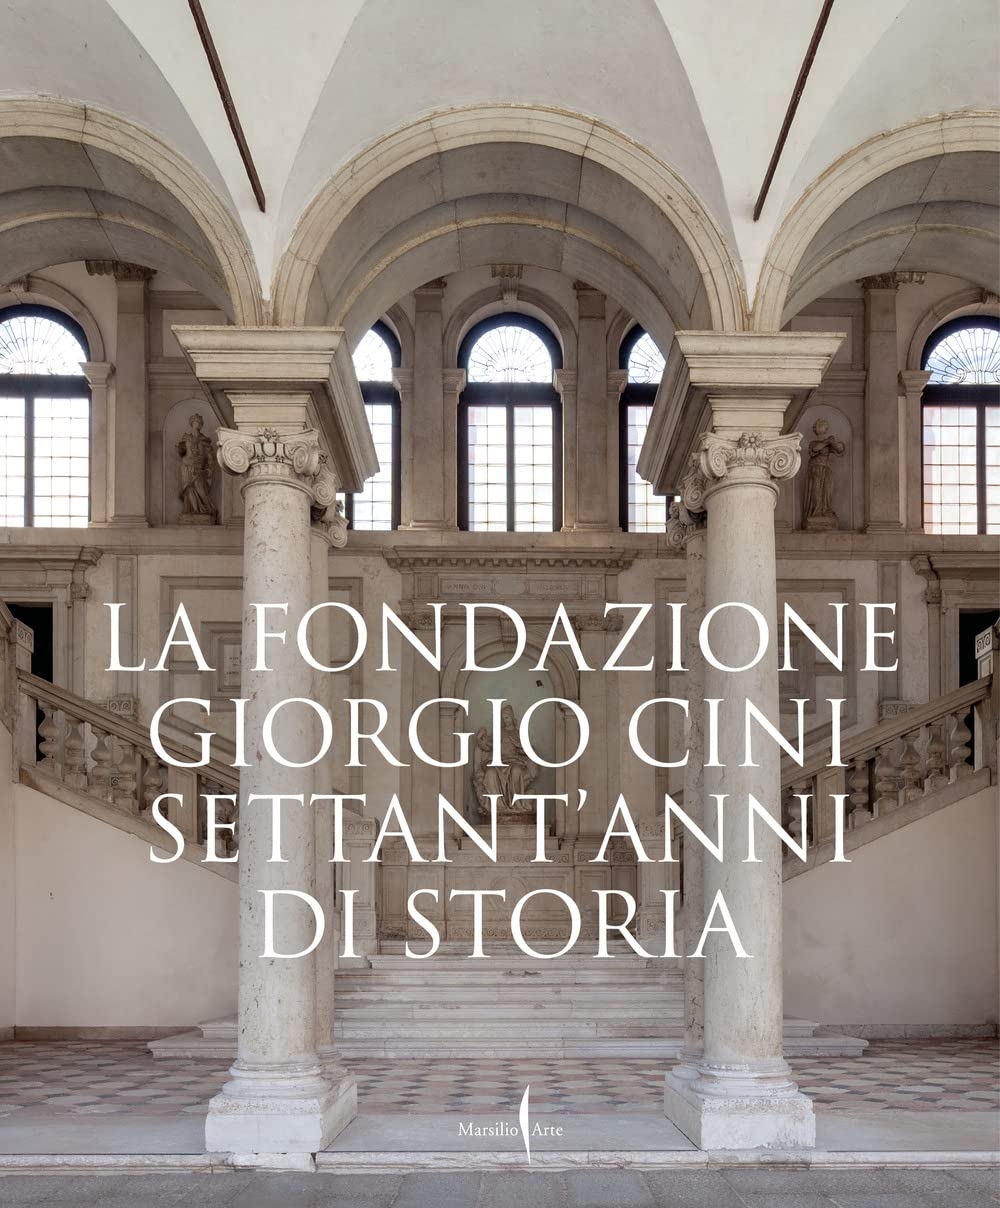 La Fondazione Giorgio Cini. Settant’anni di storia (Marsilio Arte, Venezia 2022)